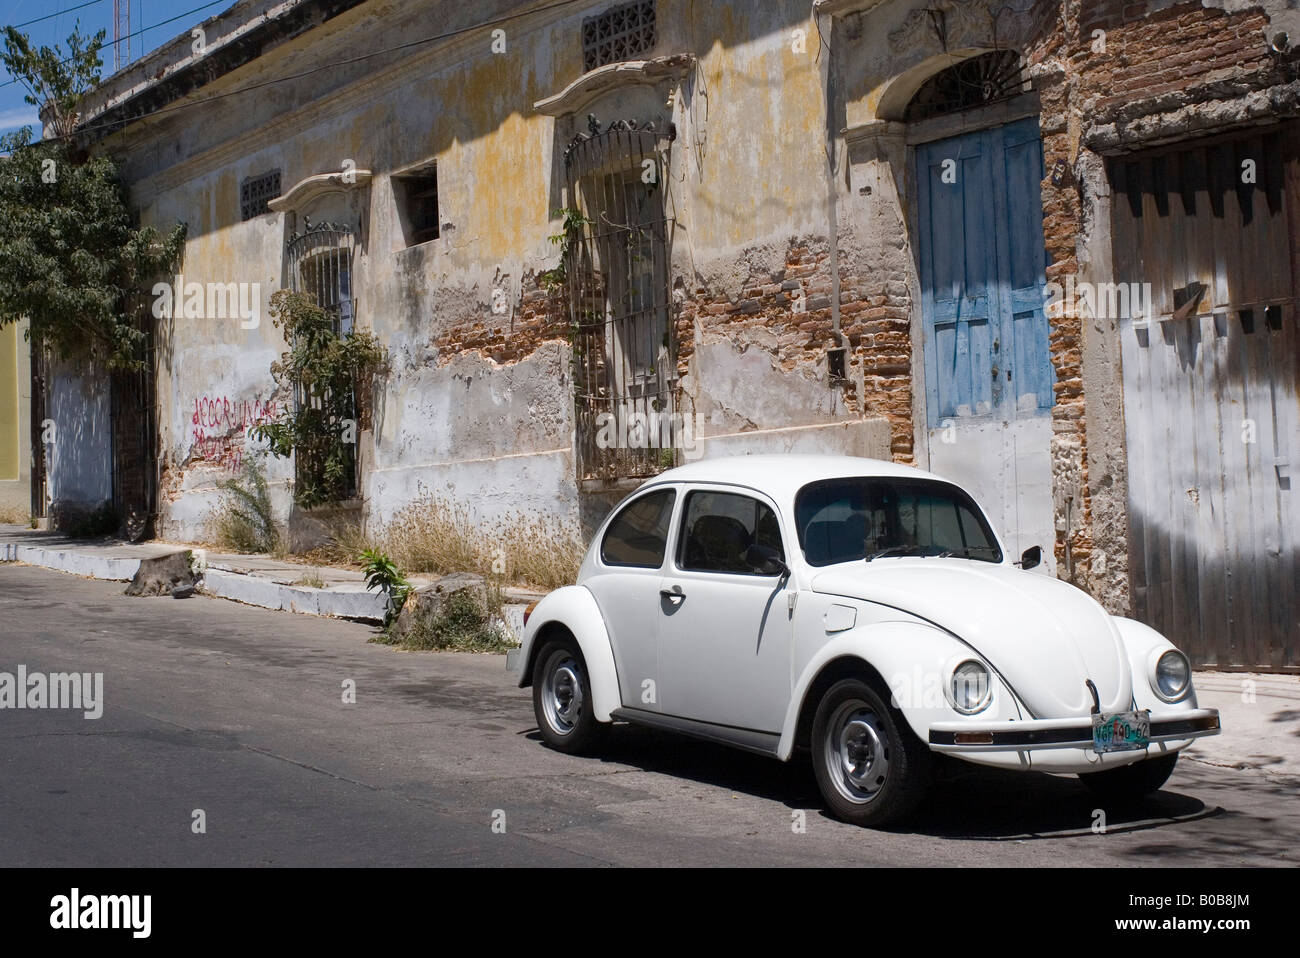 Viejo Volkswagen Beetle estacionado en una calle de Mazatlán, Sinaloa, México Foto de stock